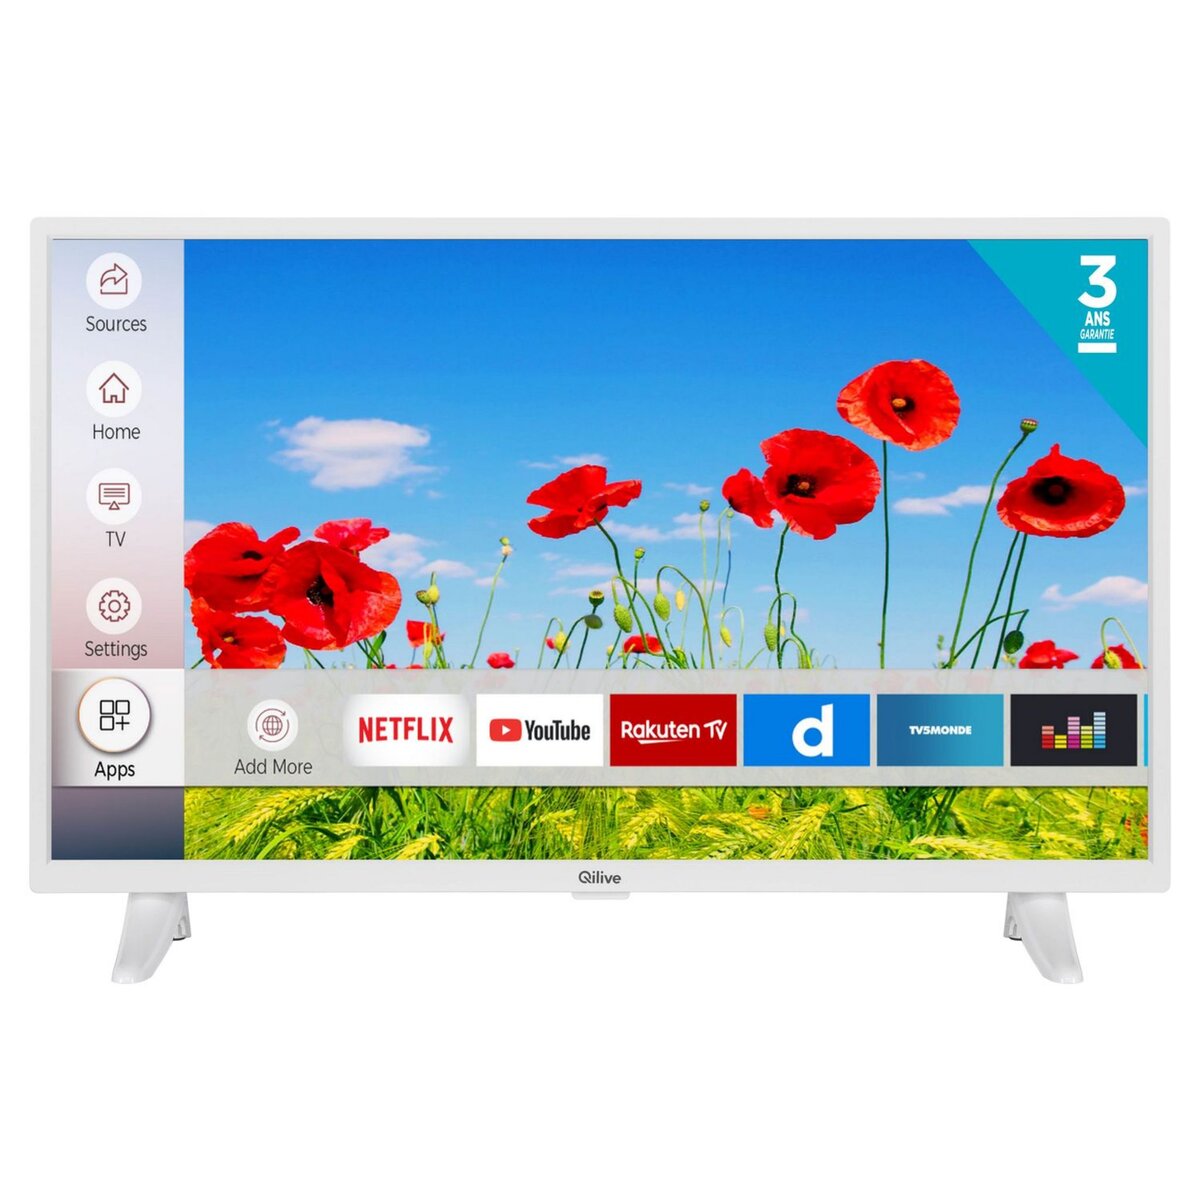 QILIVE Q32HS201W TV LED HD 80 cm Smart TV